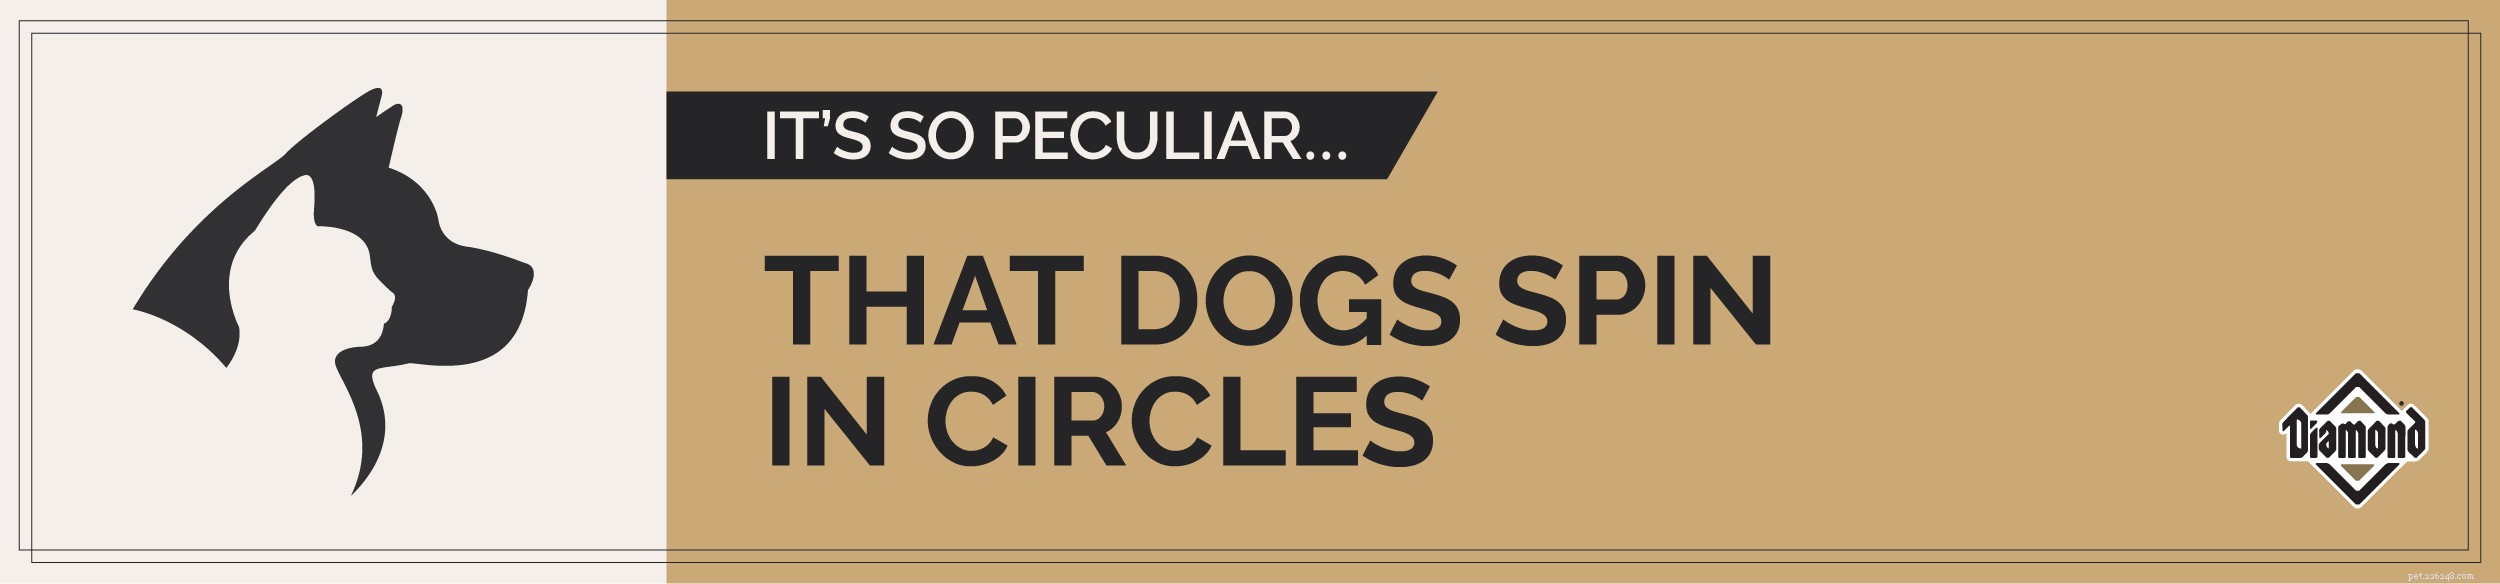 Fatos peculiares sobre animais de estimação:os cães adoram girar